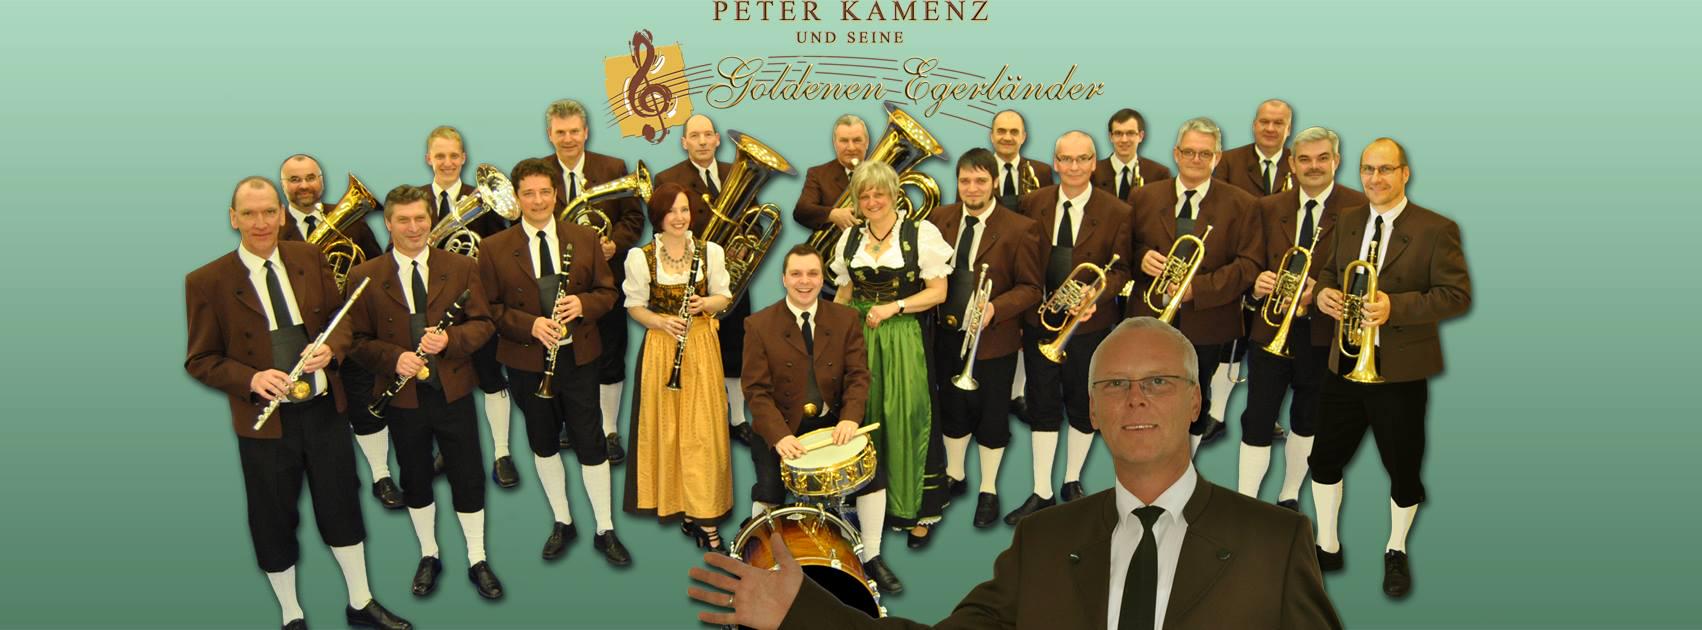 Peter Kamenz und seine Goldenen Egerländer